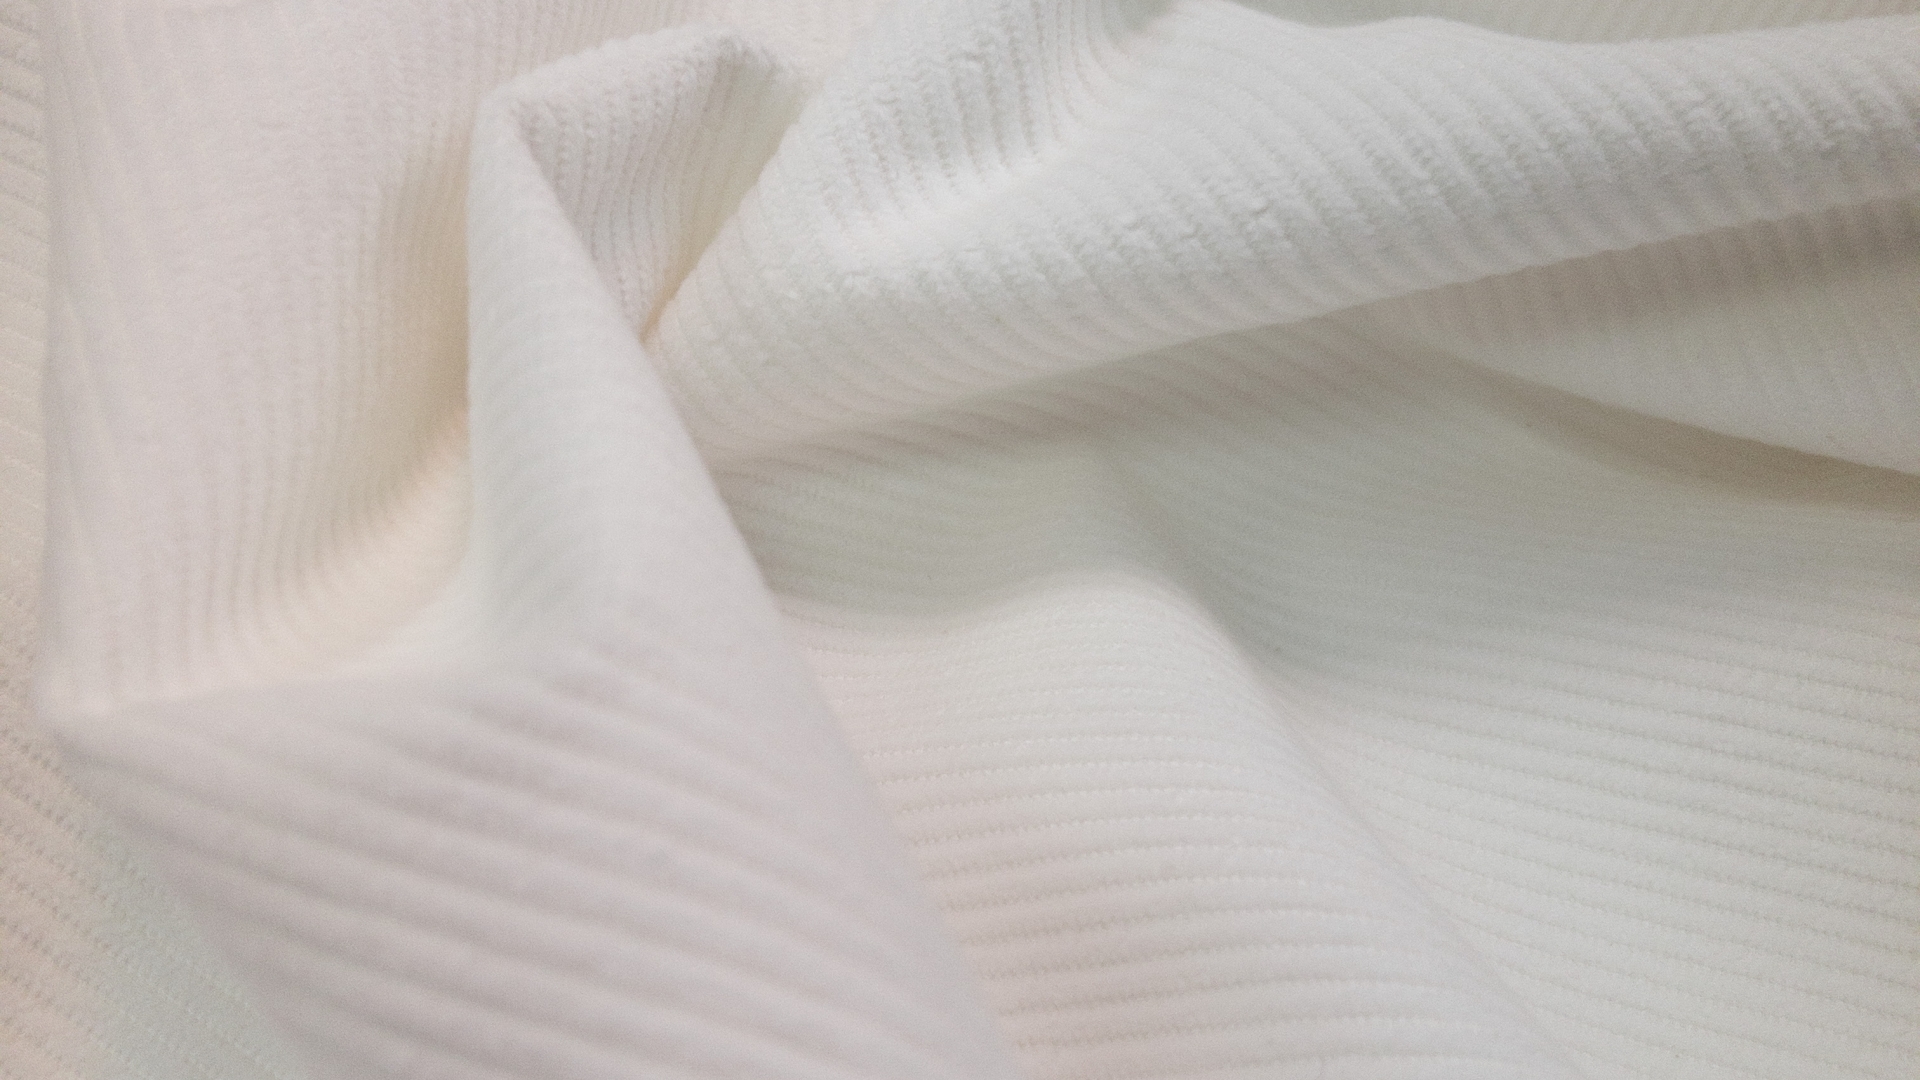 Белый вельвет из коллекционного стока. Рубчик средний, в одном сантиметре примерно 3 рубчика. Вельвет довольно плотный, для рубашки оверсайз или легкой летней куртки.